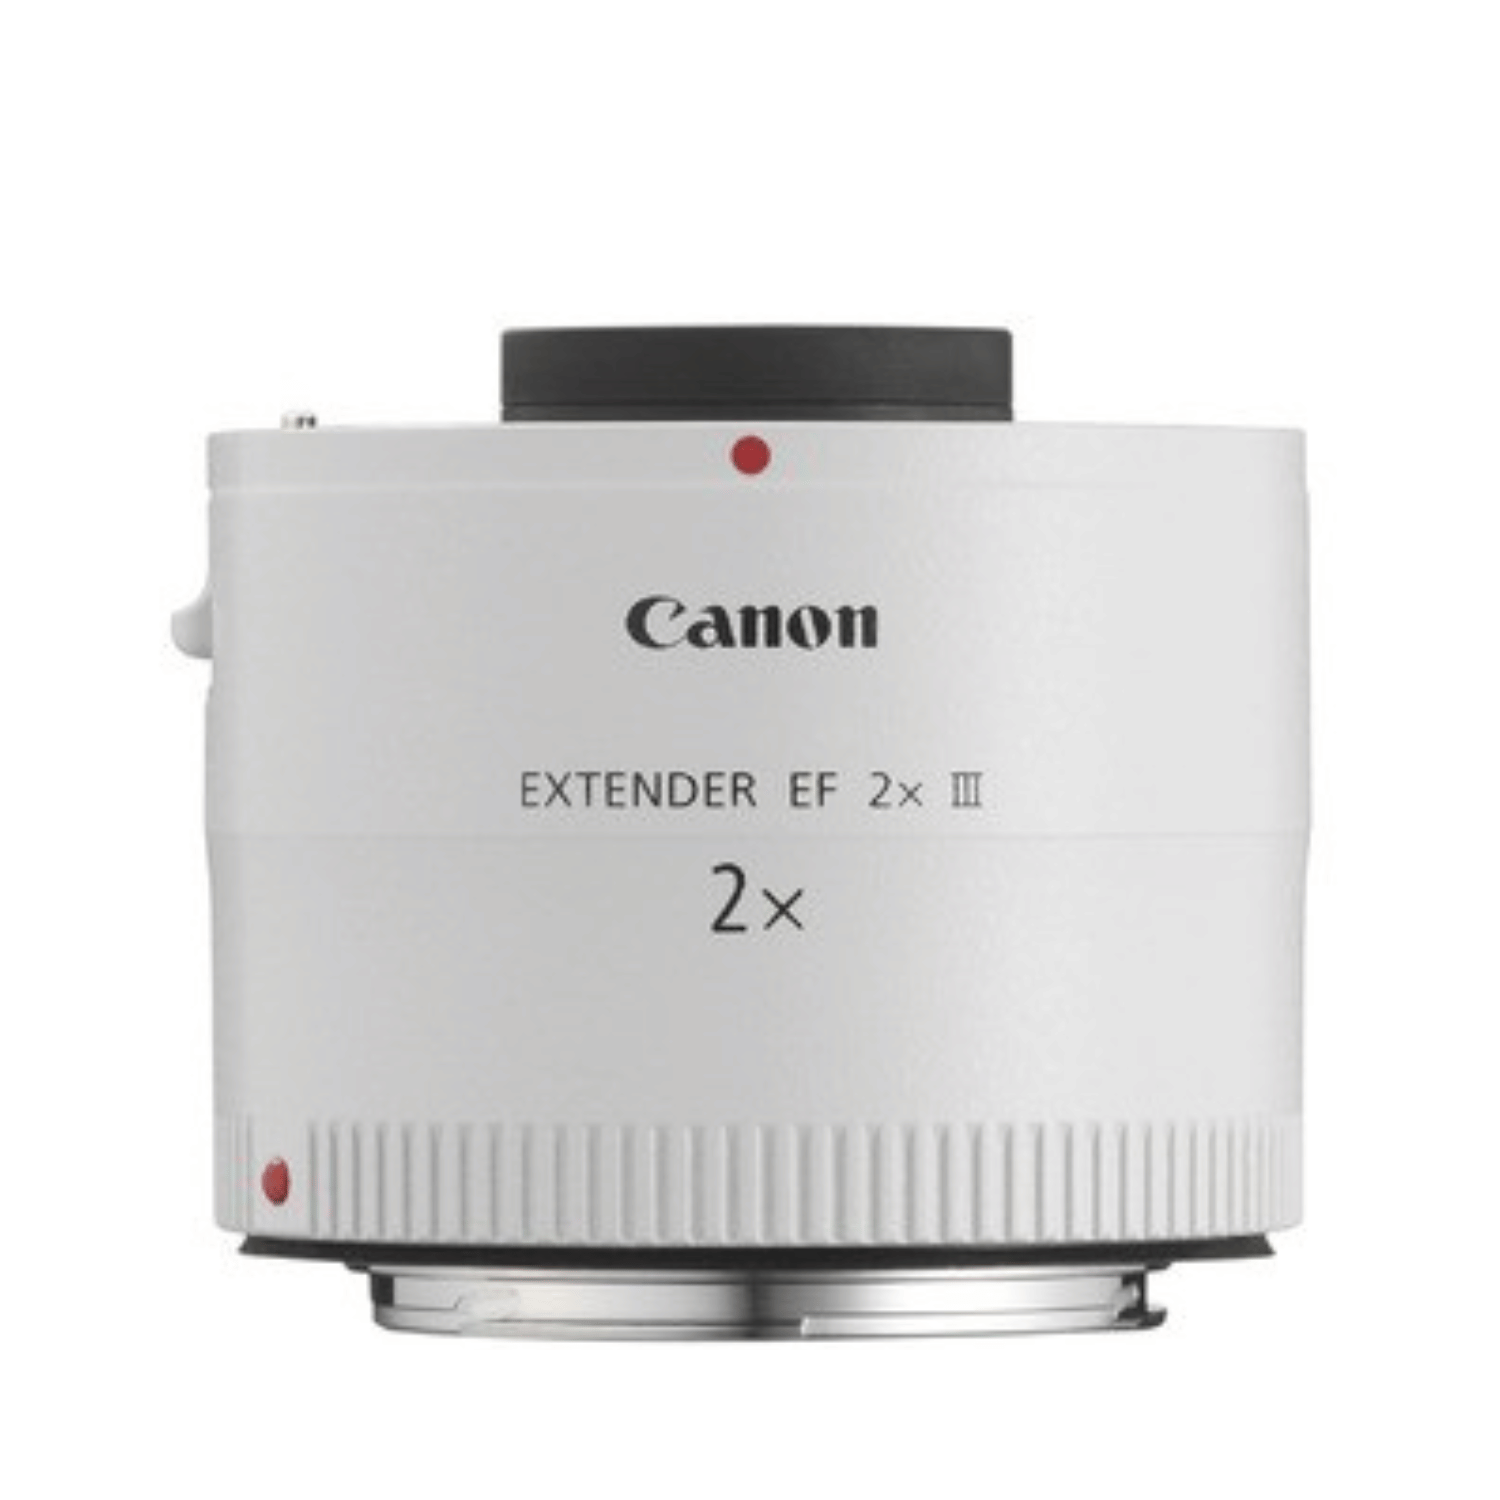 Canon Extender EF 2x III - Gar. Canon Italia -Cine Sud è da 47 anni sul mercato! 4410B005